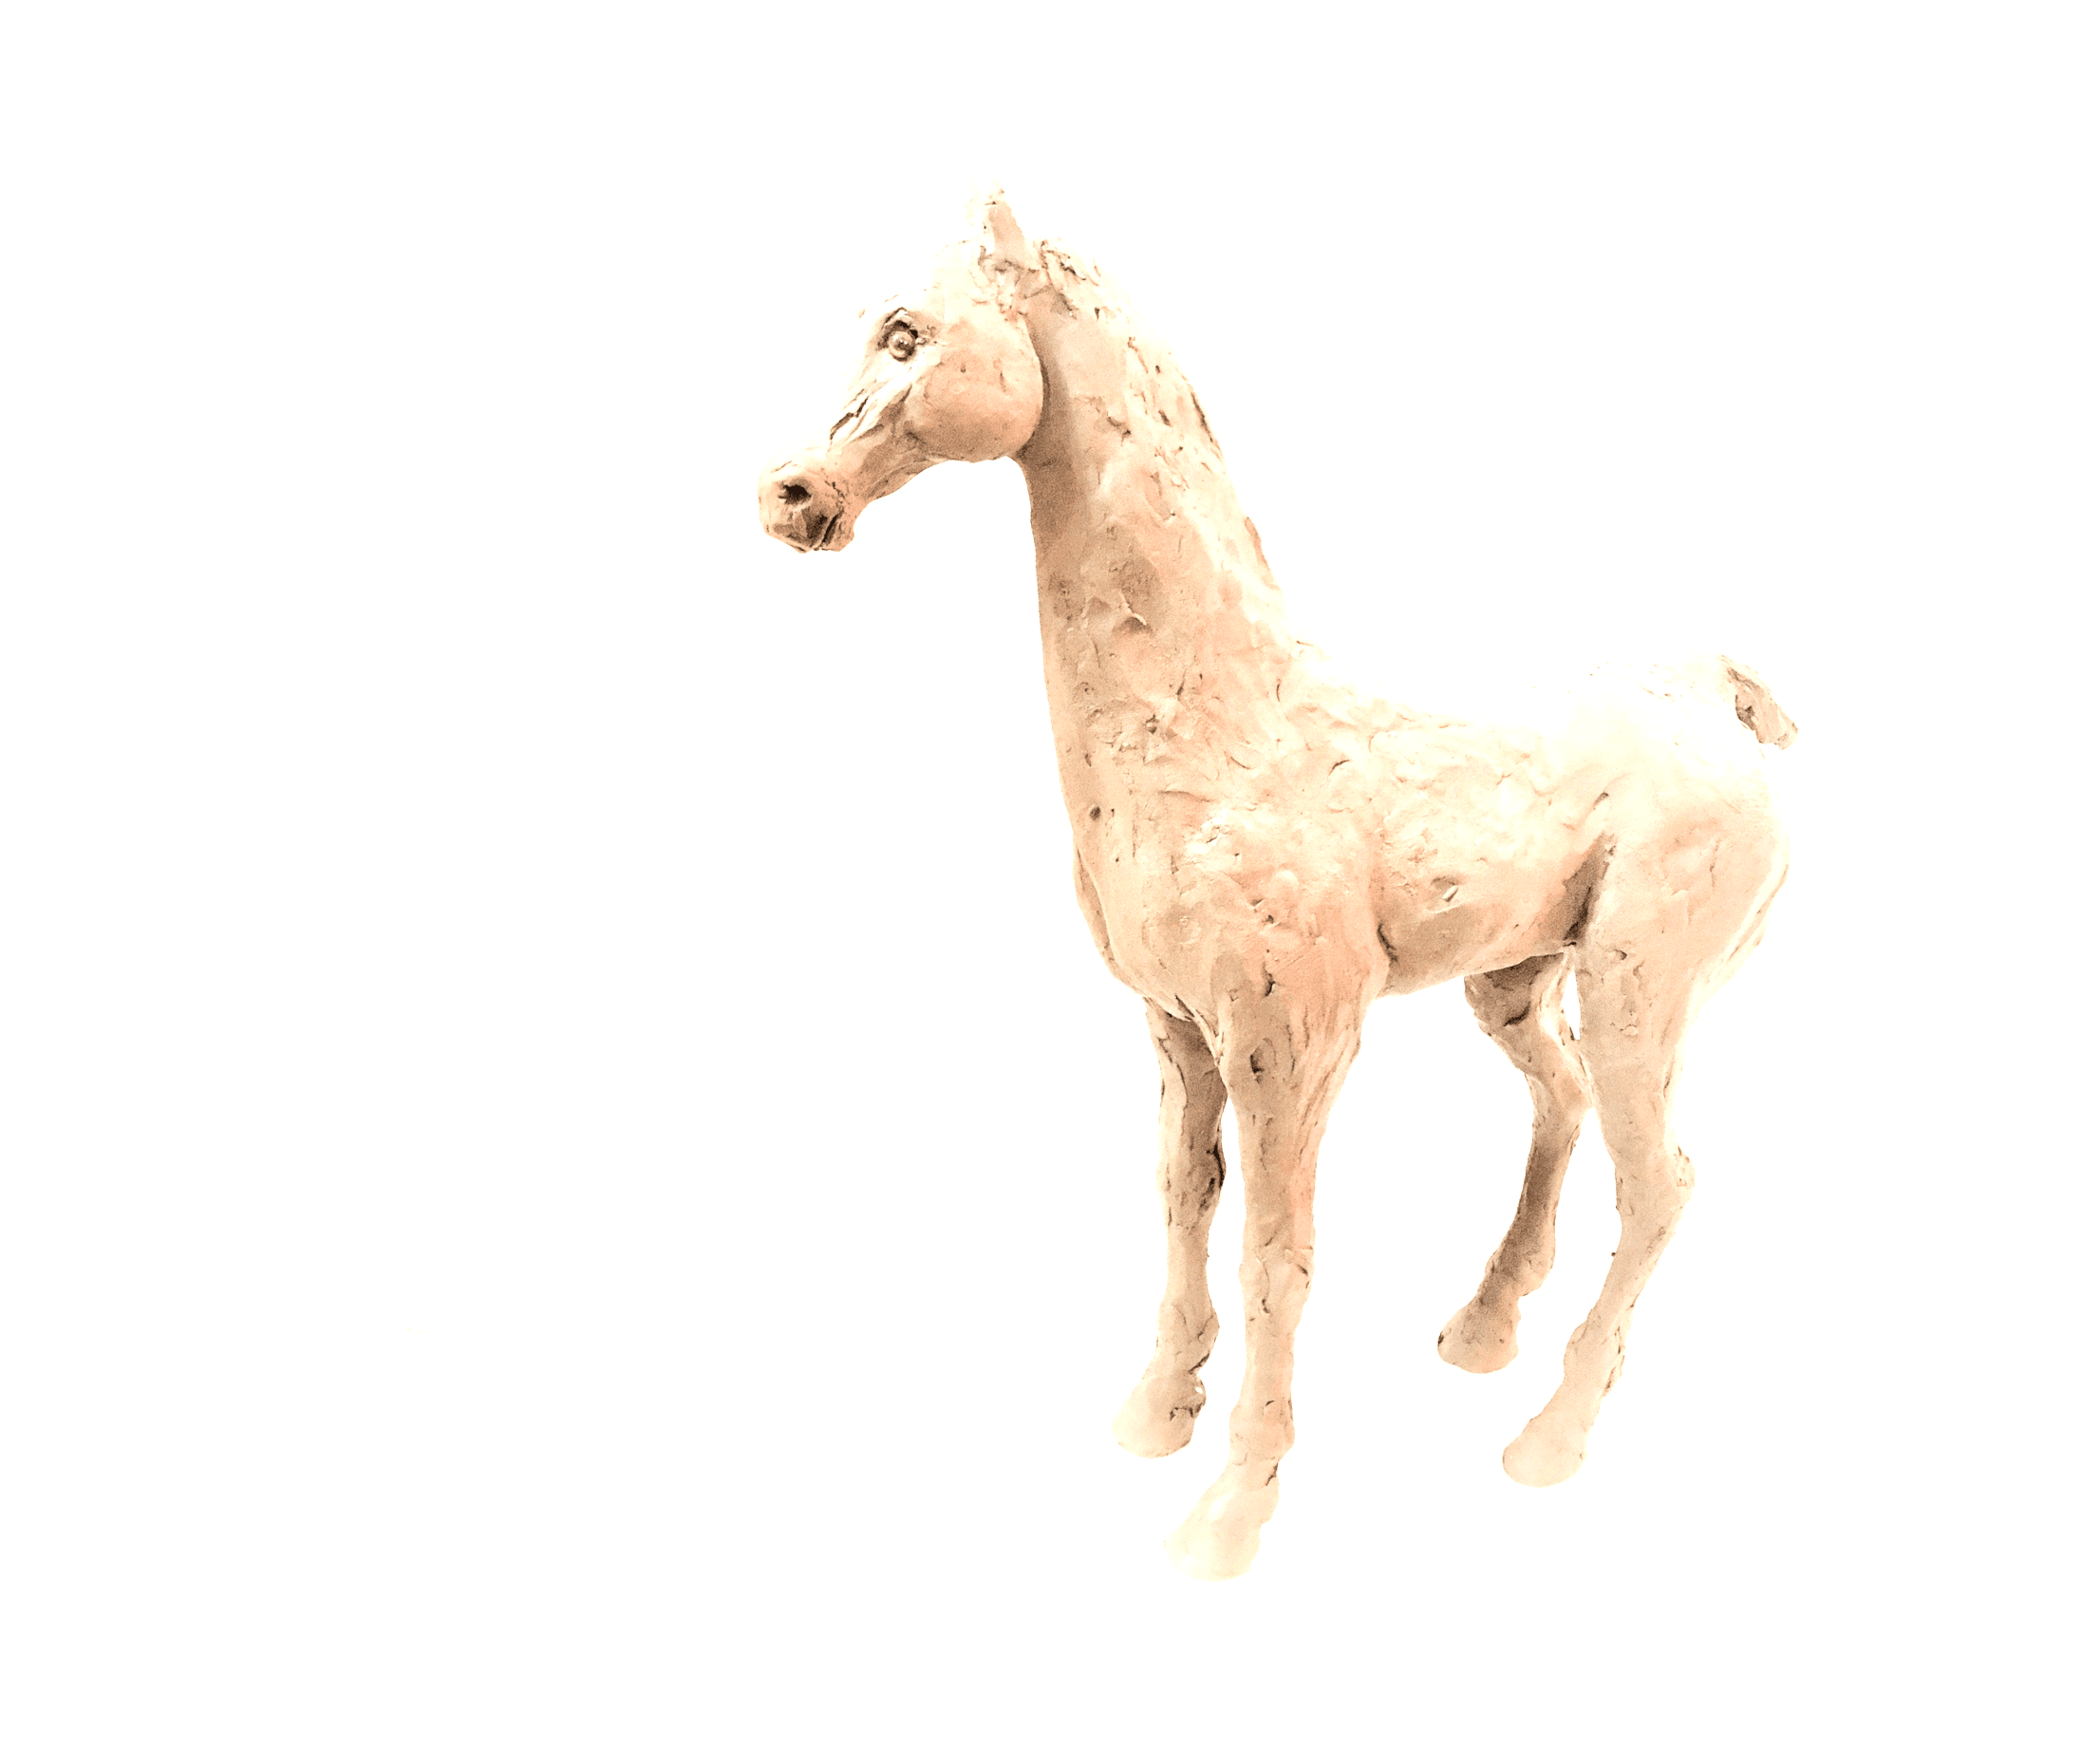 Pale Horse